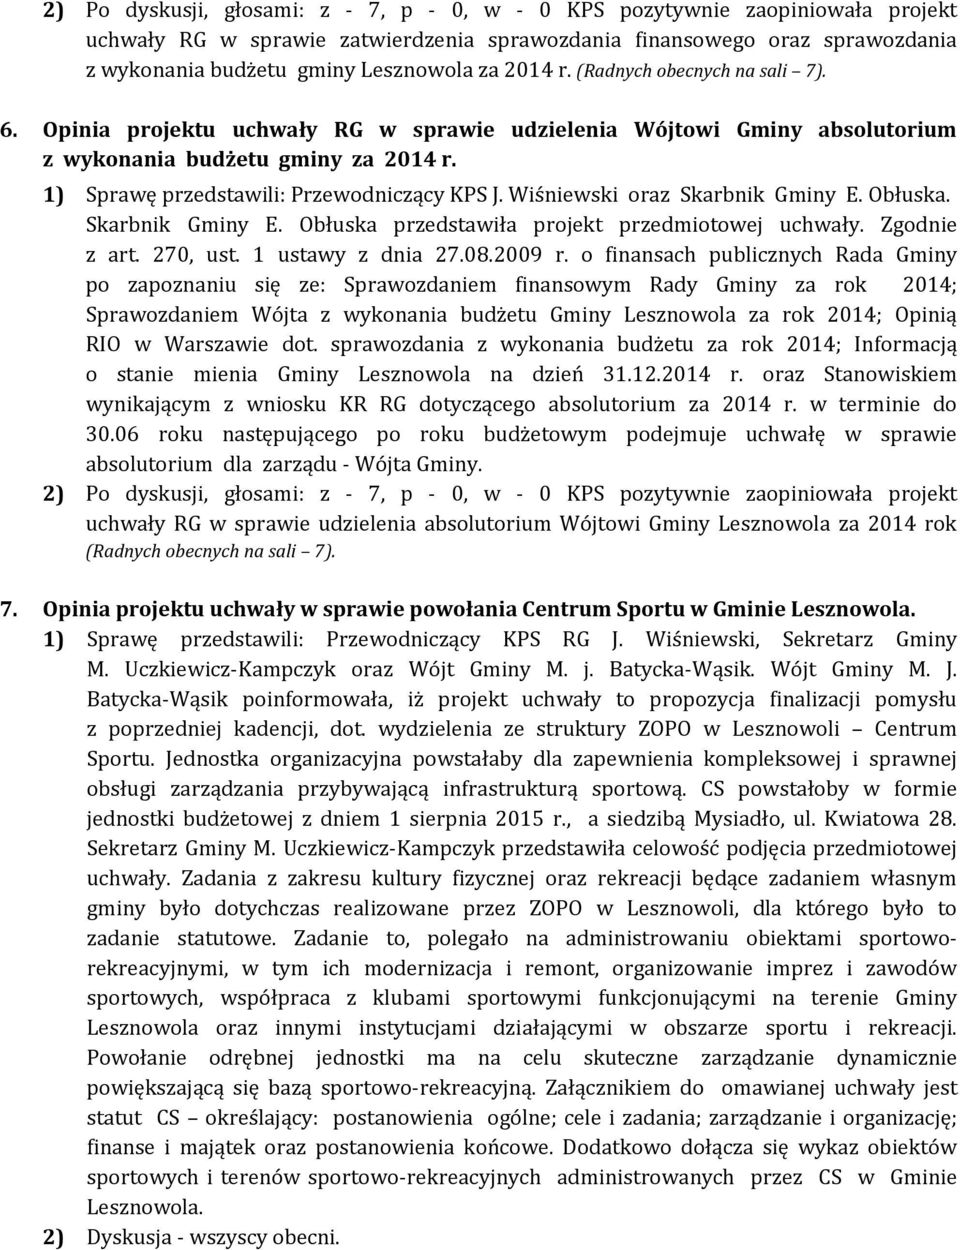 Wiśniewski oraz Skarbnik Gminy E. Obłuska. Skarbnik Gminy E. Obłuska przedstawiła projekt przedmiotowej uchwały. Zgodnie z art. 270, ust. 1 ustawy z dnia 27.08.2009 r.